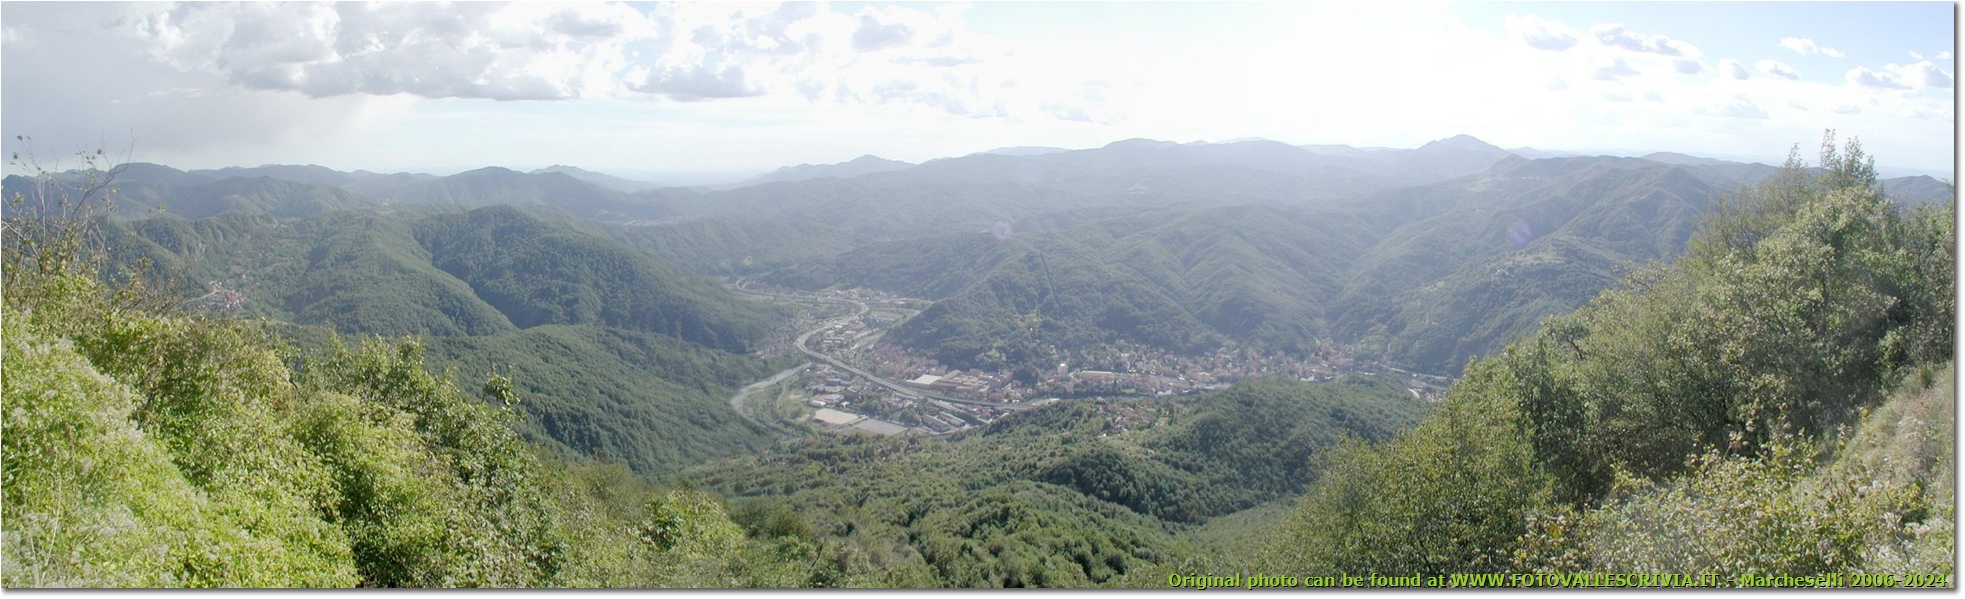 Veduta panoramica dal Monte Reale verso Ronco e la Valle Scrivia - Busalla&Ronco Scrivia - <2001 - Panorami - Estate - Olympus Camedia 3000